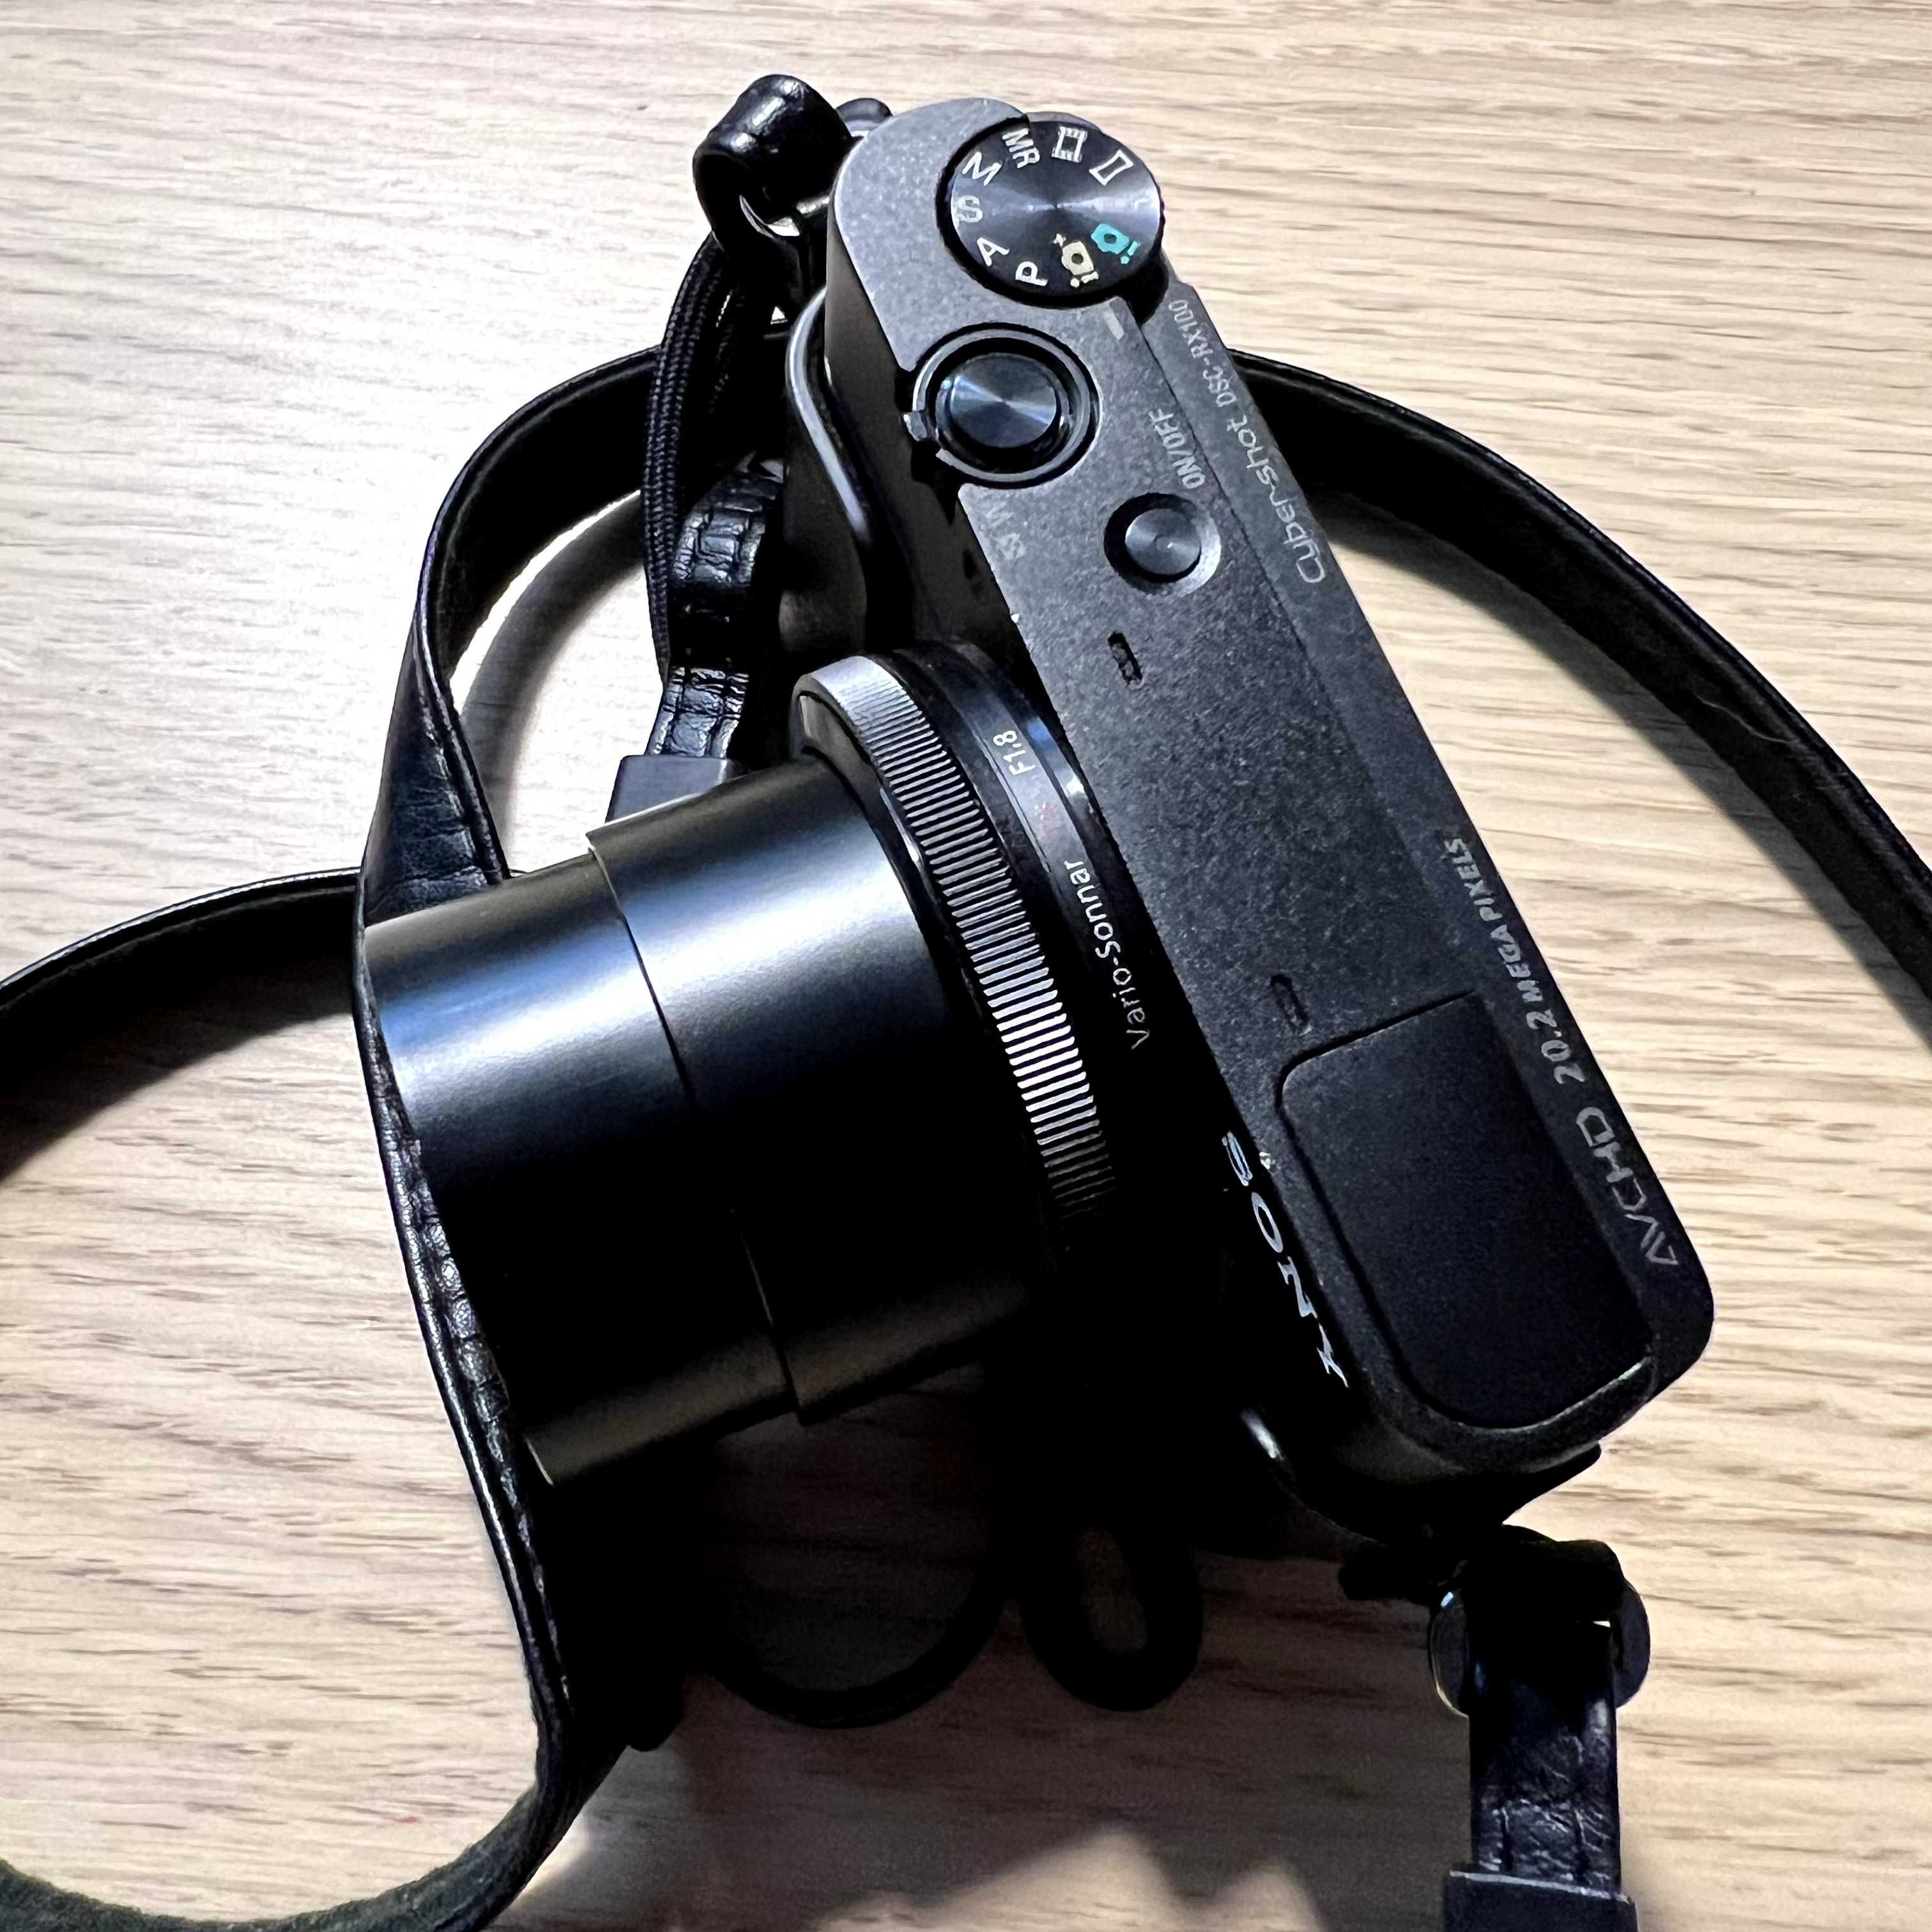 Sony Cyber-shot DSC-RX100 Czarny